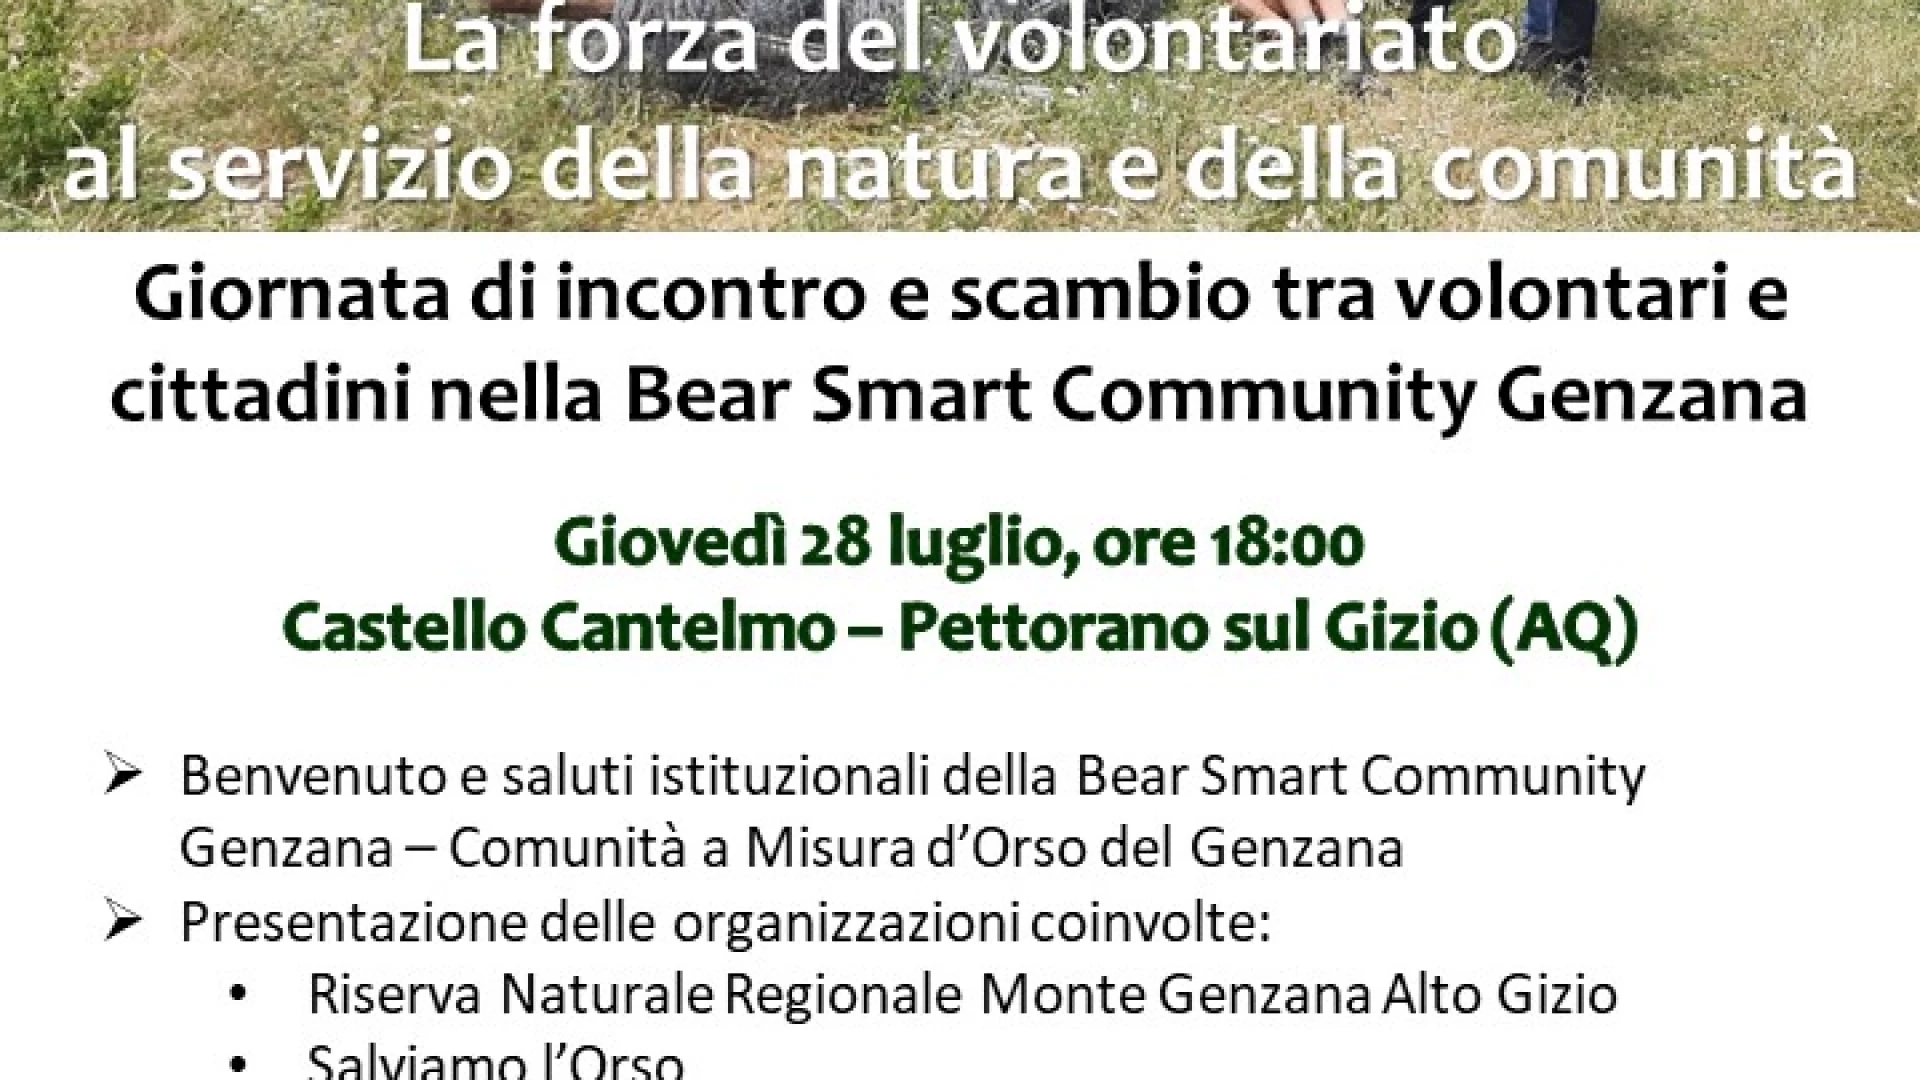 Appuntamenti con la natura e la comunità questa settimana nella Bear Smart Community Genzana di Pettorano sul Gizio